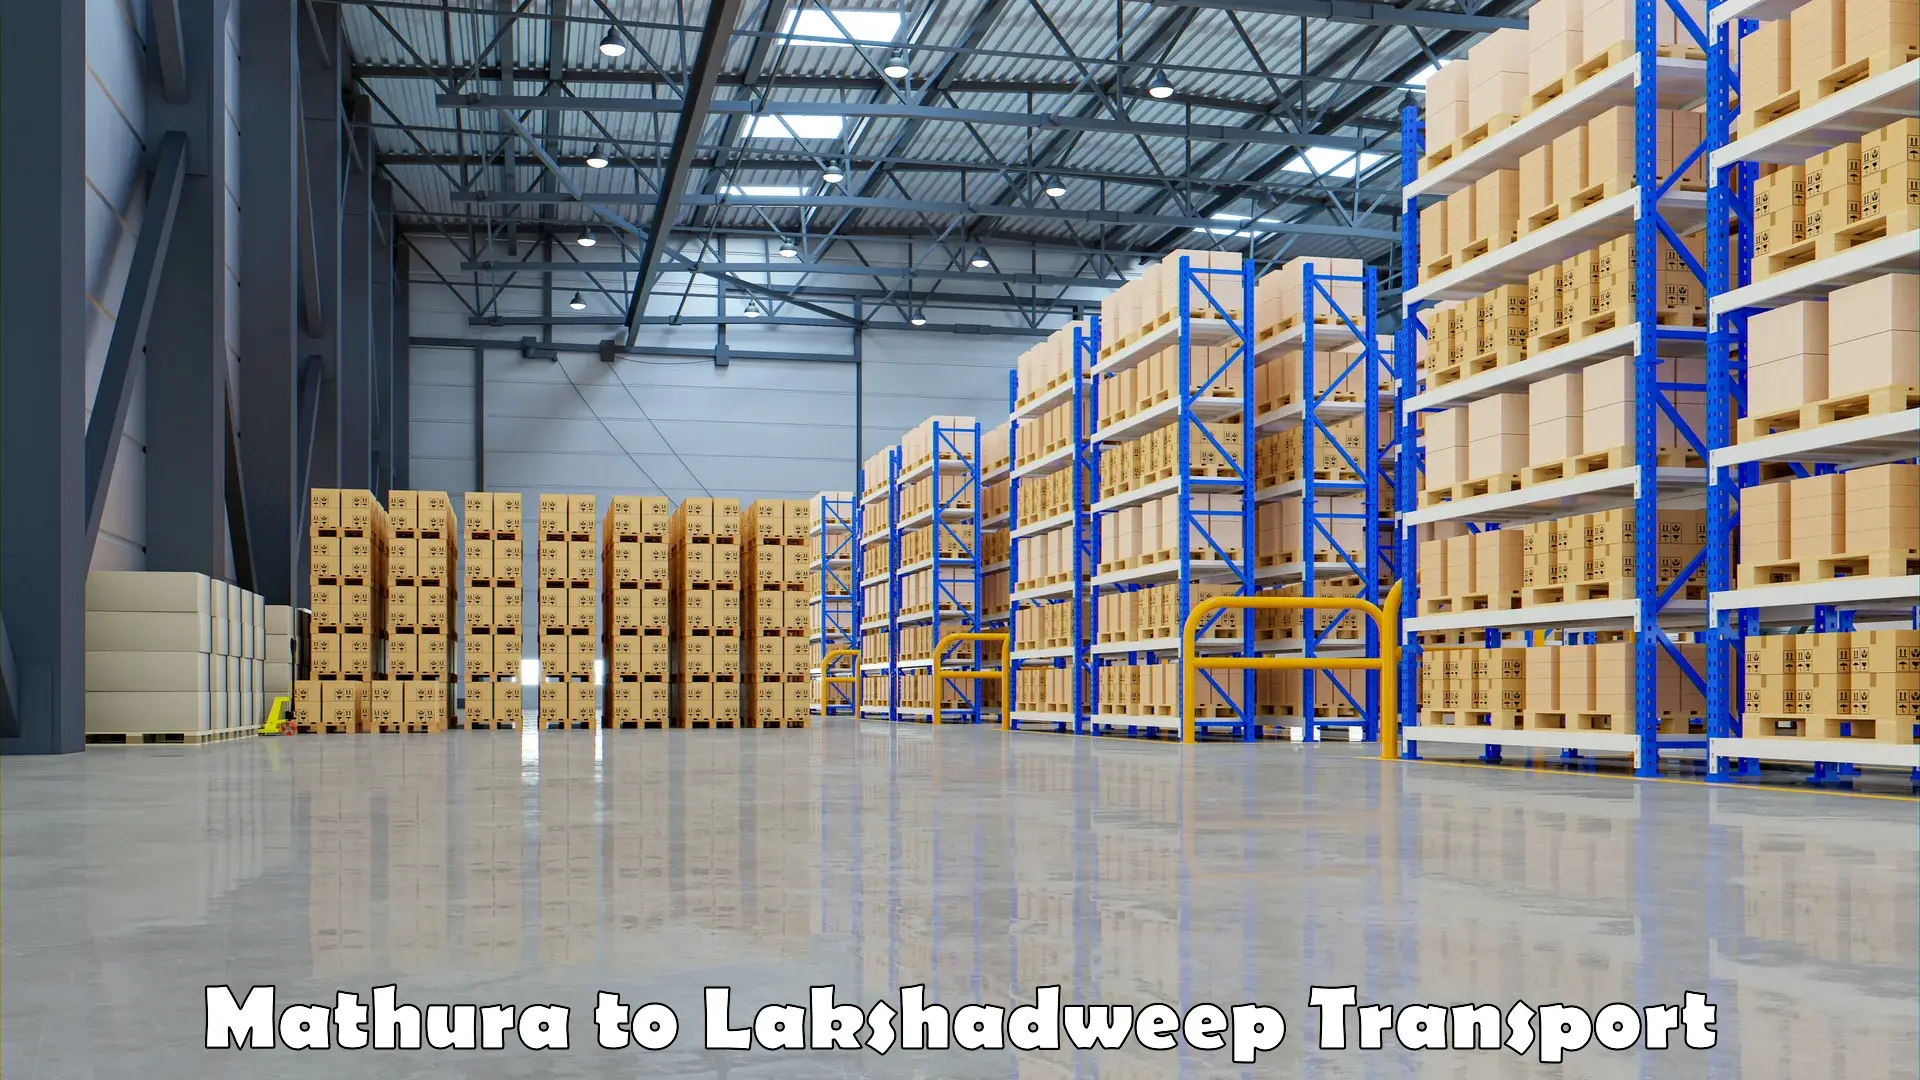 Online transport service Mathura to Lakshadweep